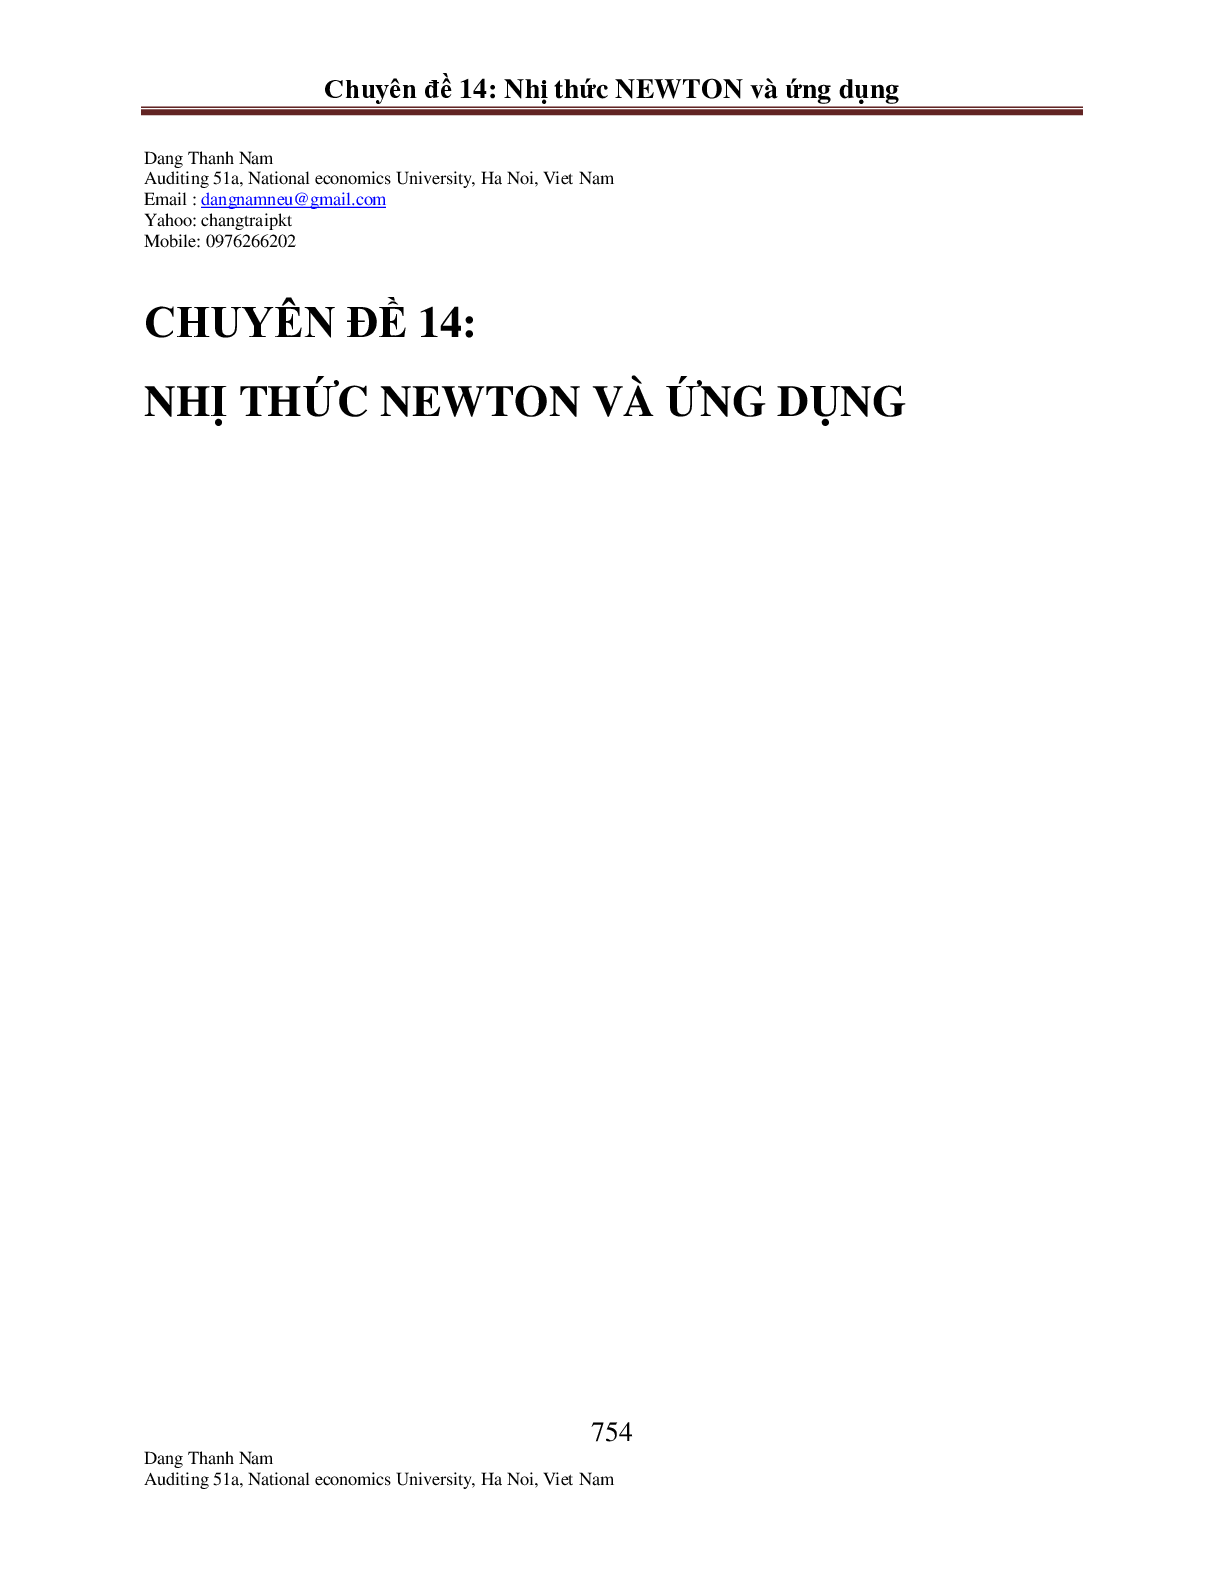 Chuyên đề Nhị thức Newton 2023 hay, chọn lọc (trang 1)